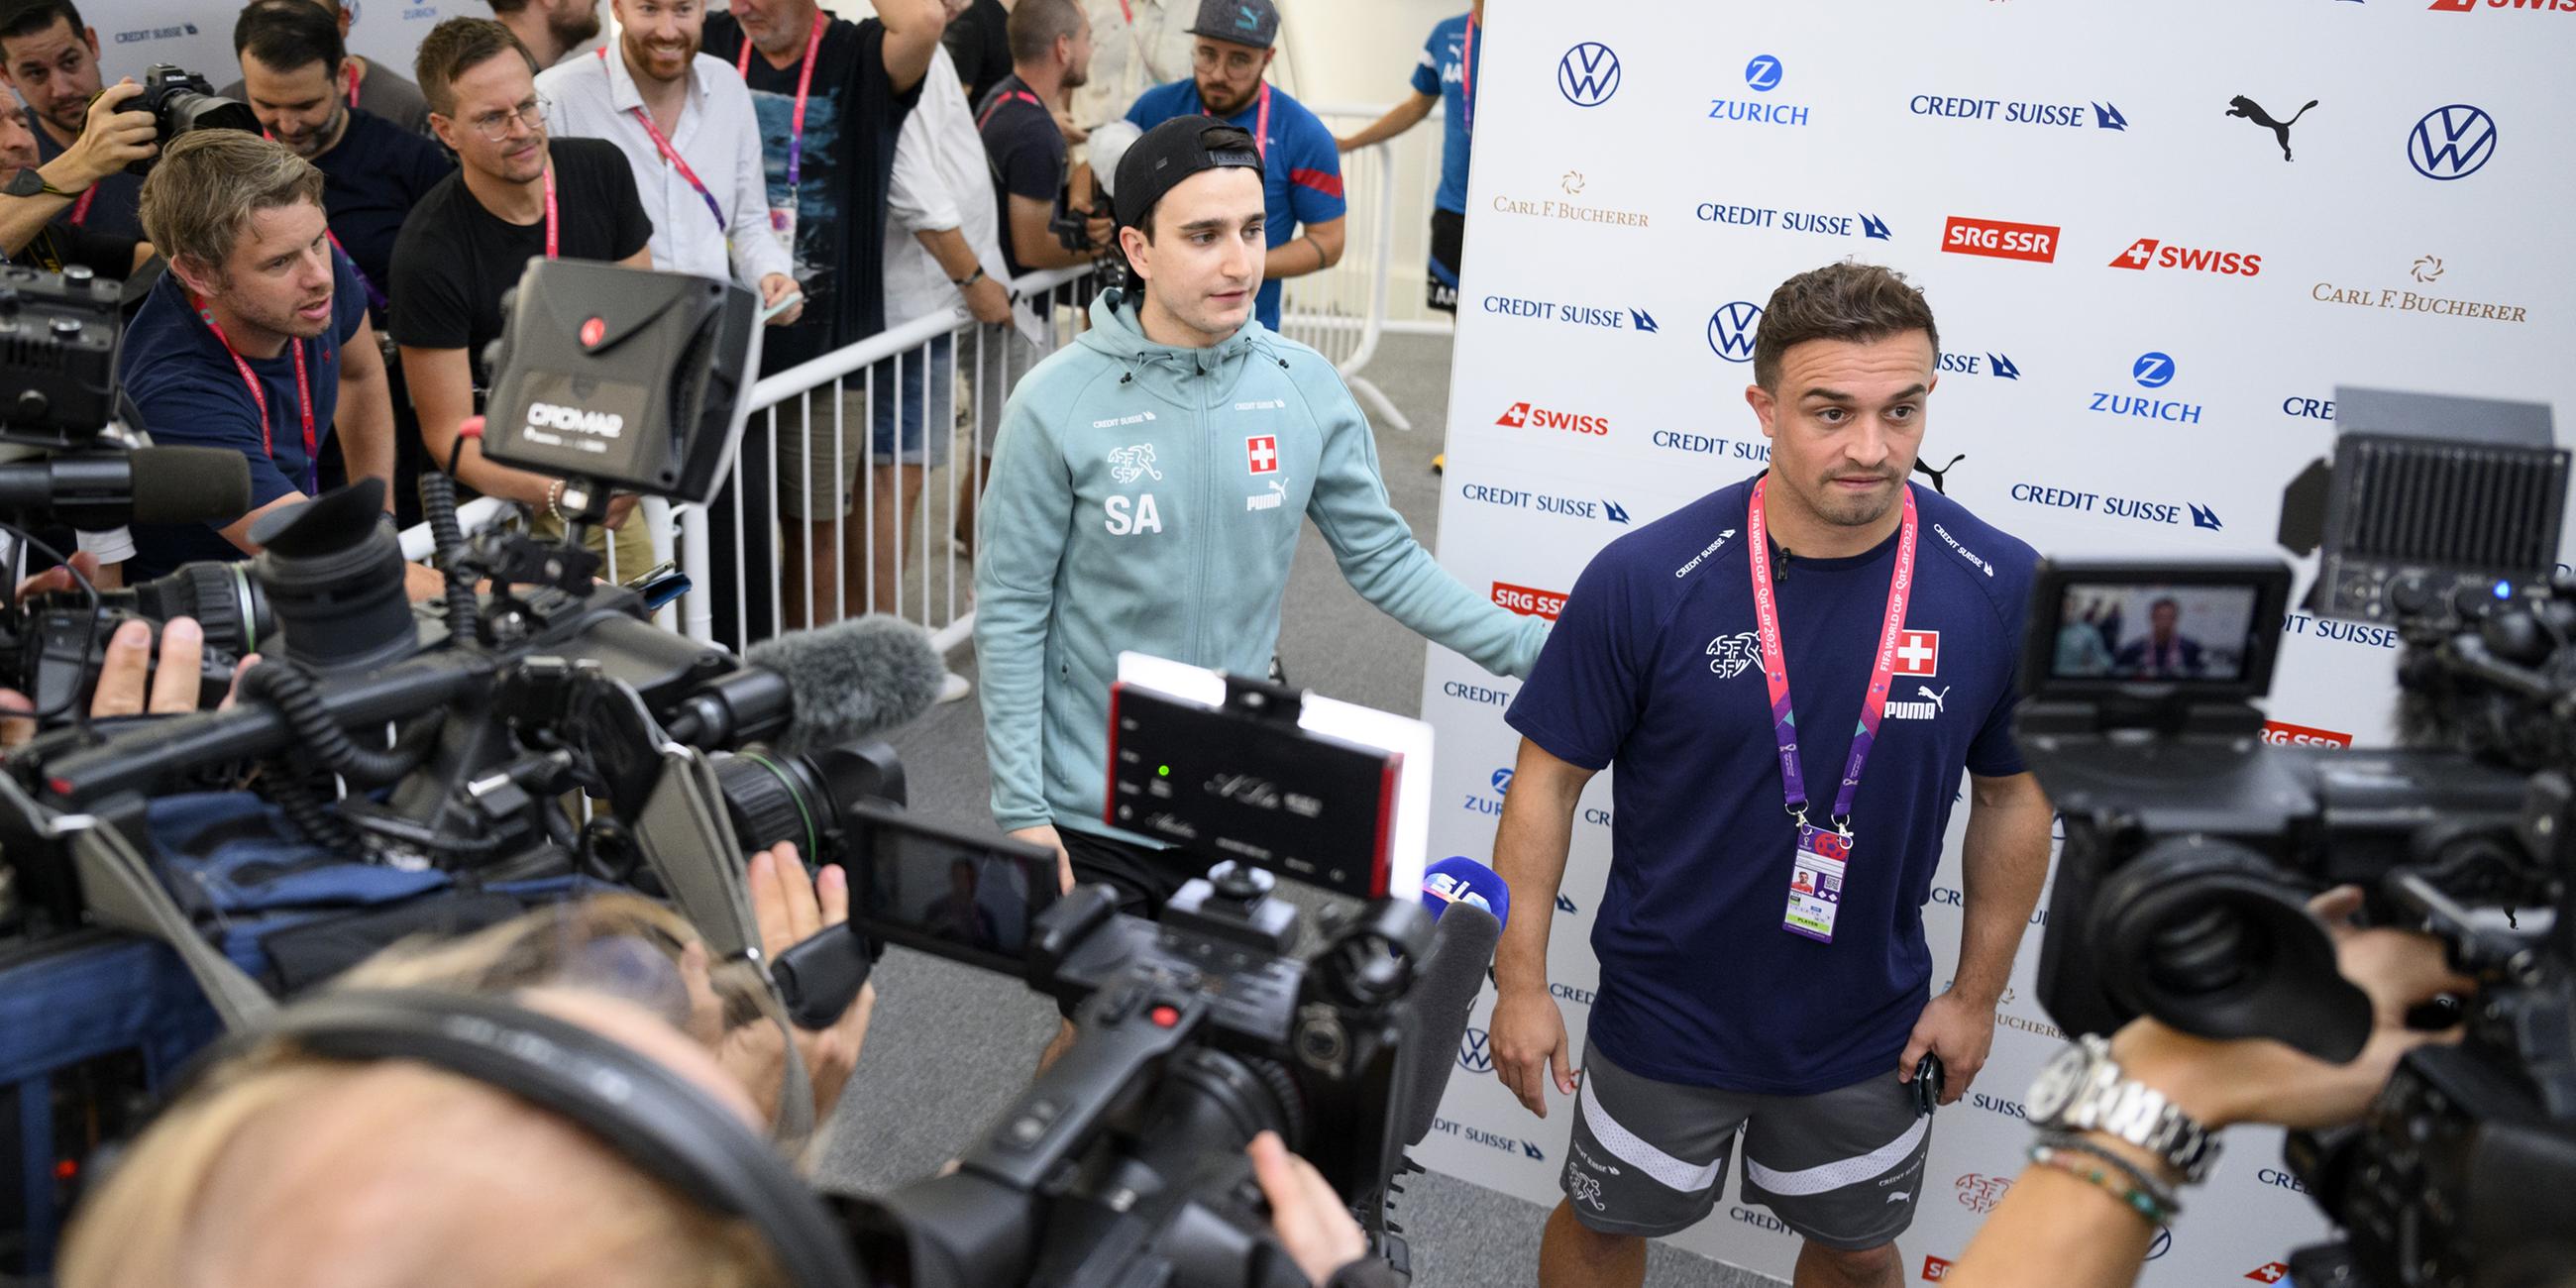 Der Schweizer Mittelfeldspieler Xherdan Shaqiri (r) spricht mit Journalisten neben dem Pressesprecher des Schweizerischen Fußballverbandes, Sergio Avuso